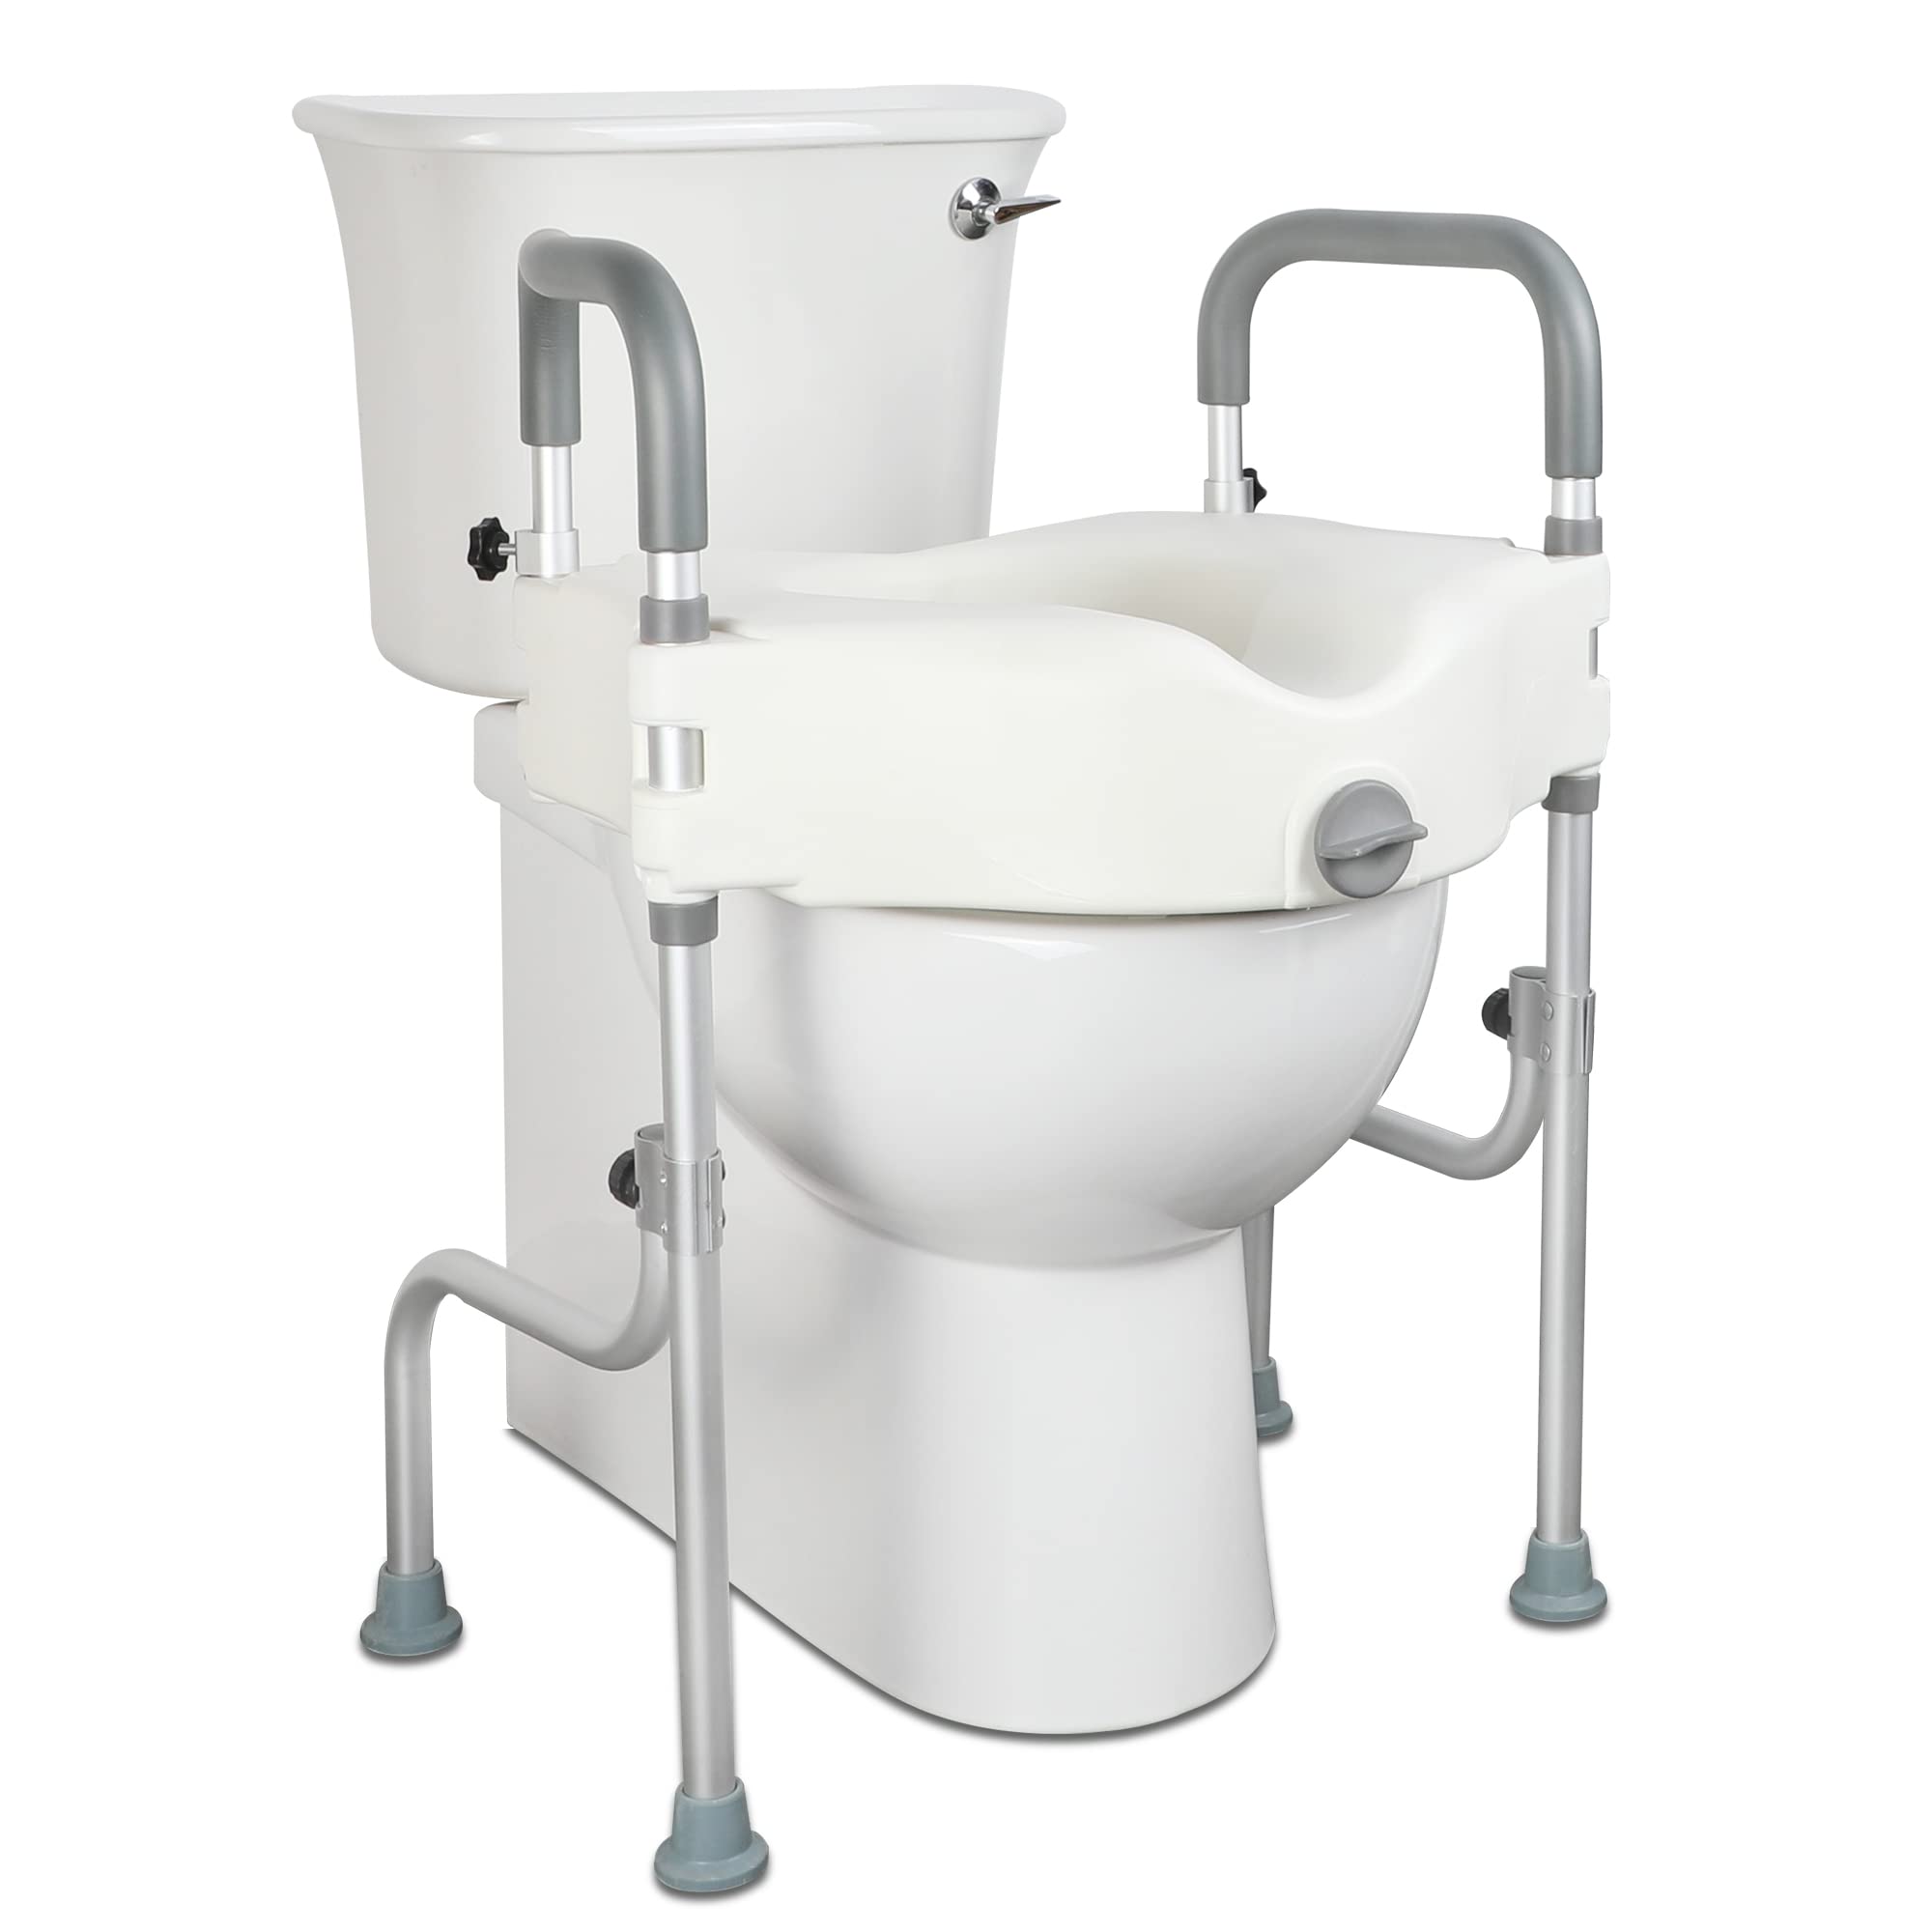 Toilettensitzerhöhung mit Armlehnen 10 cm groß, wc sitzerhöhung